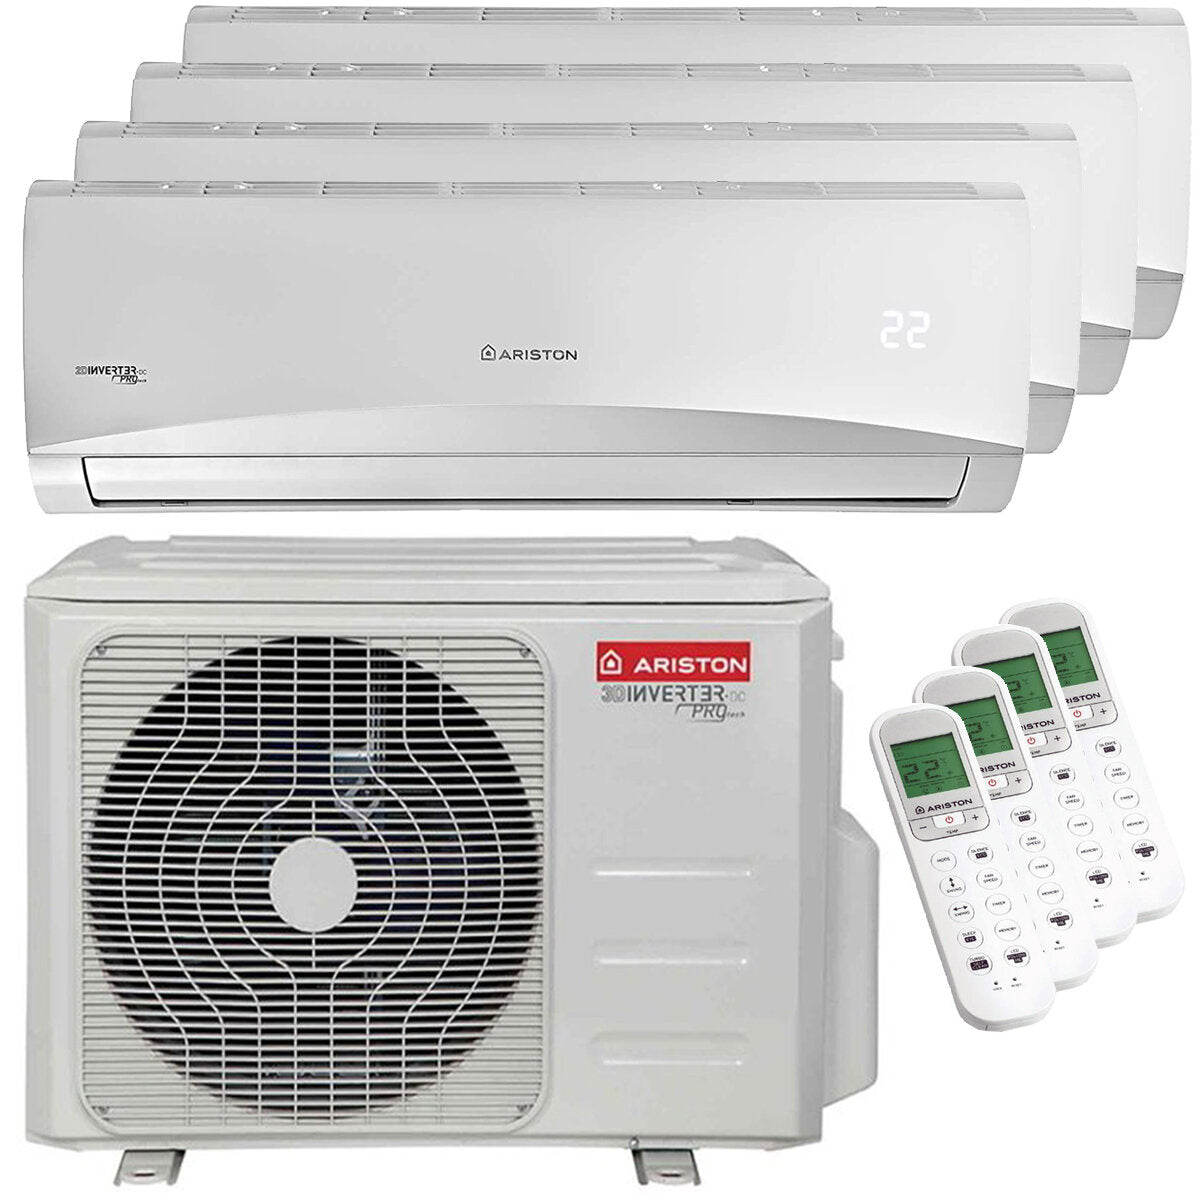 Ariston PRIOS R32 quadri split air conditioner 12000 + 12000 + 12000 + 18000 BTU inverter A ++ outdoor unit 10.6 kW